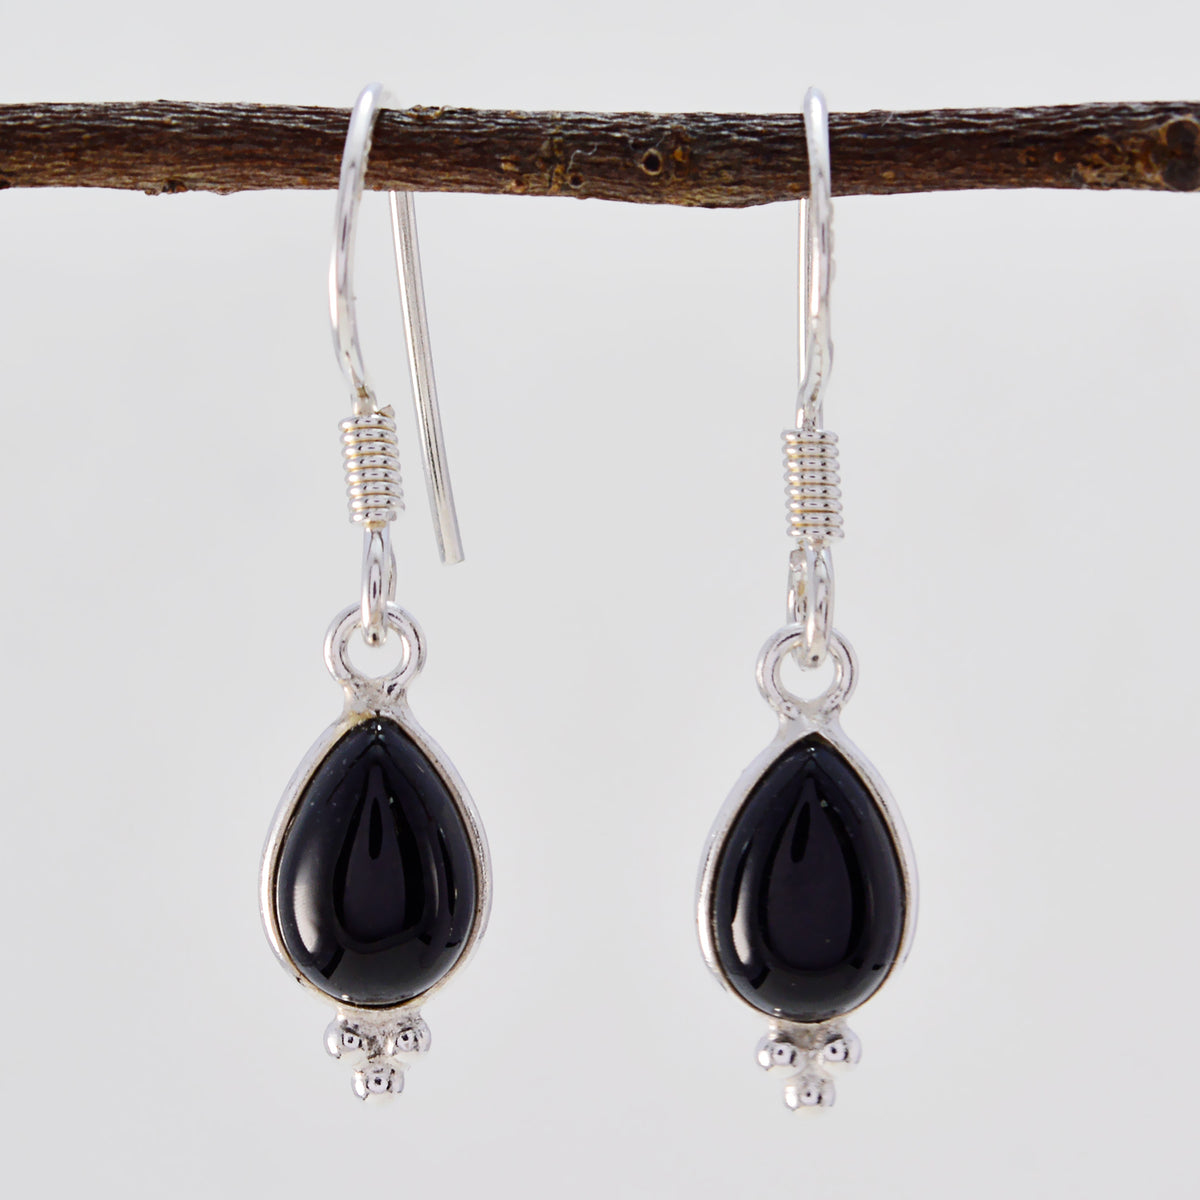 Riyo Good Gemstones pear Cabochon Black Onyx Silver Earrings black Friday gift